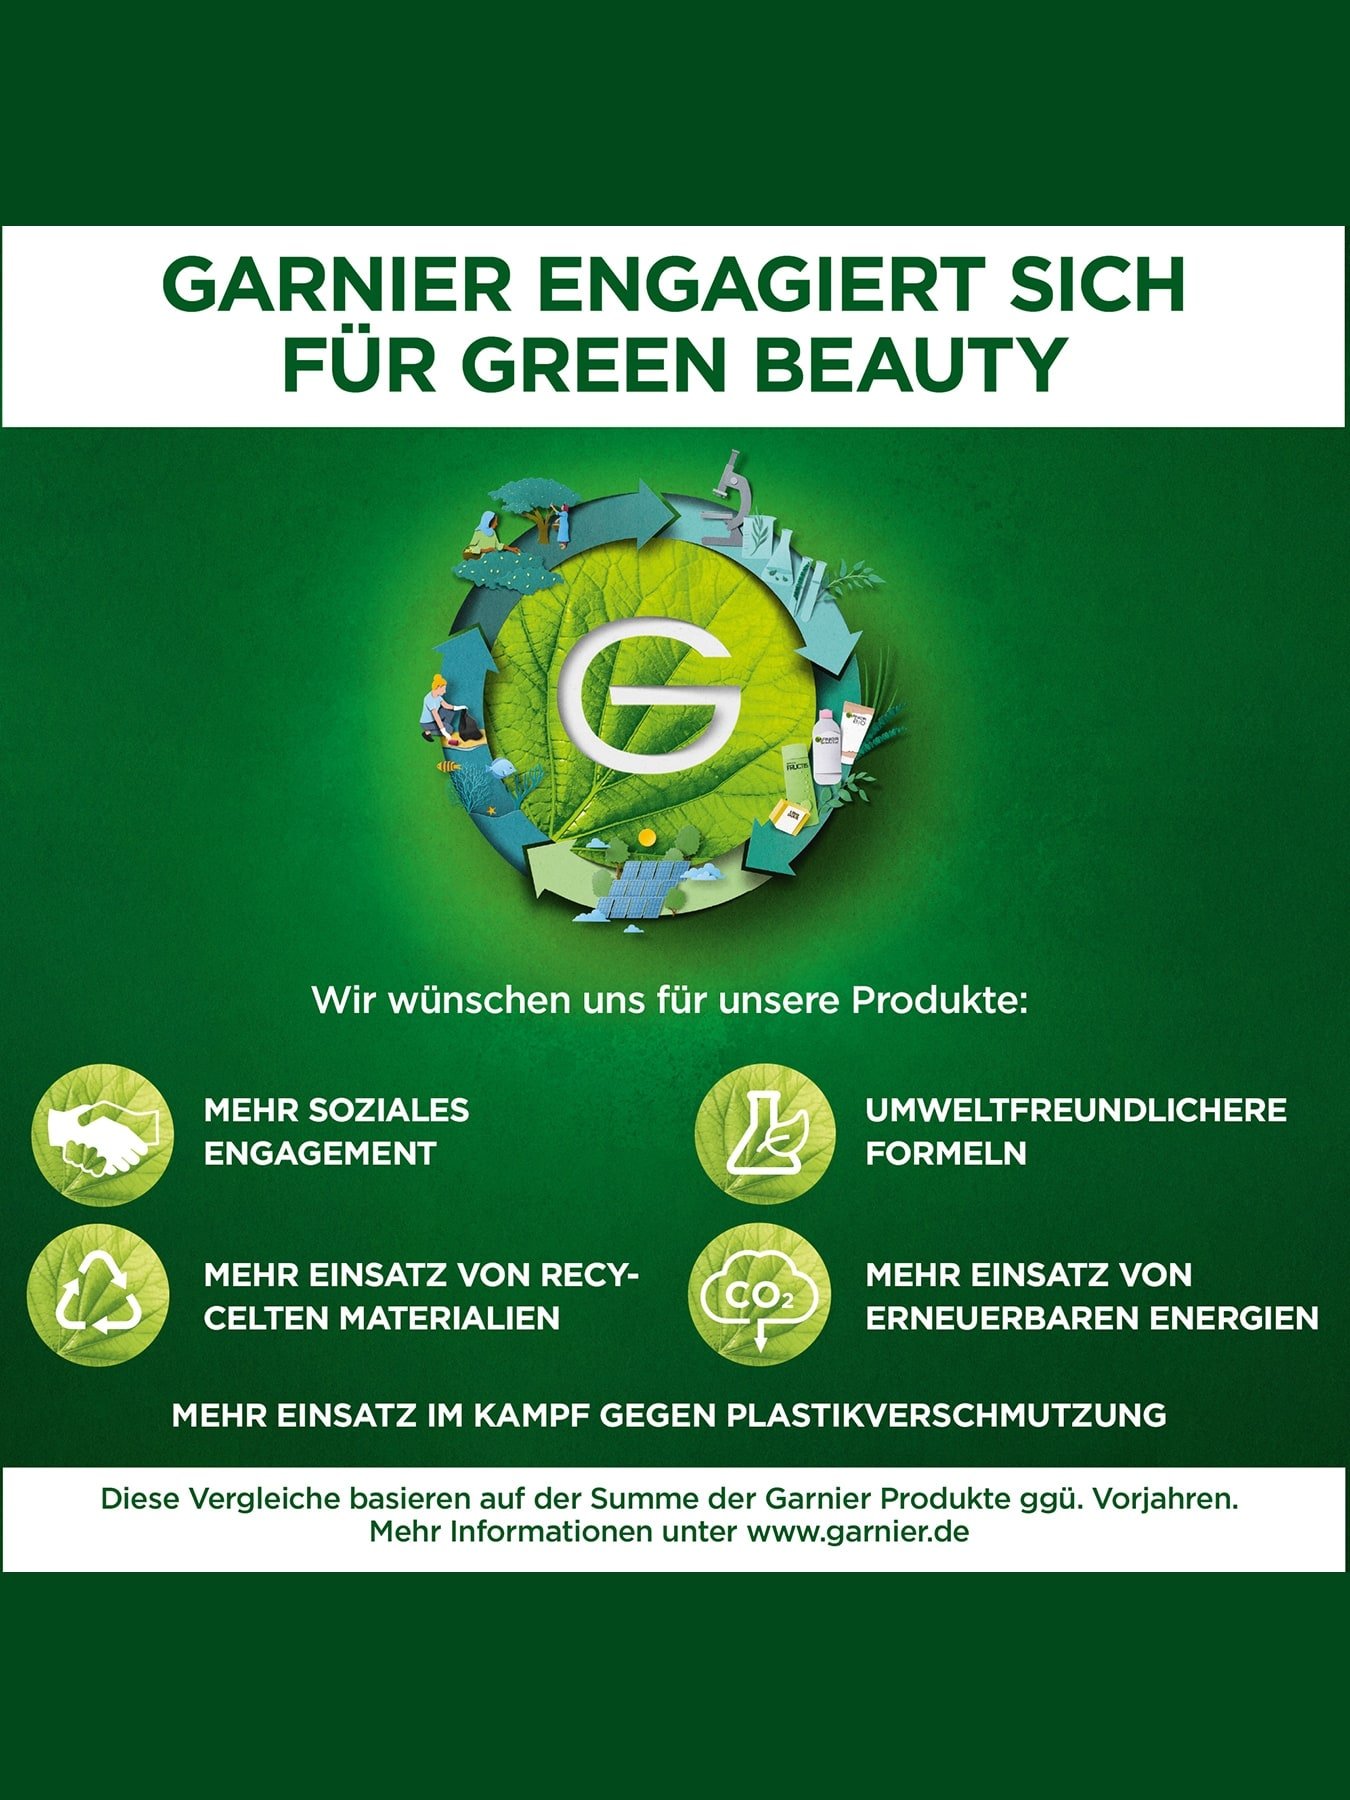 Garnier Green Beauty - Erklärung der wichtigsten Ziele